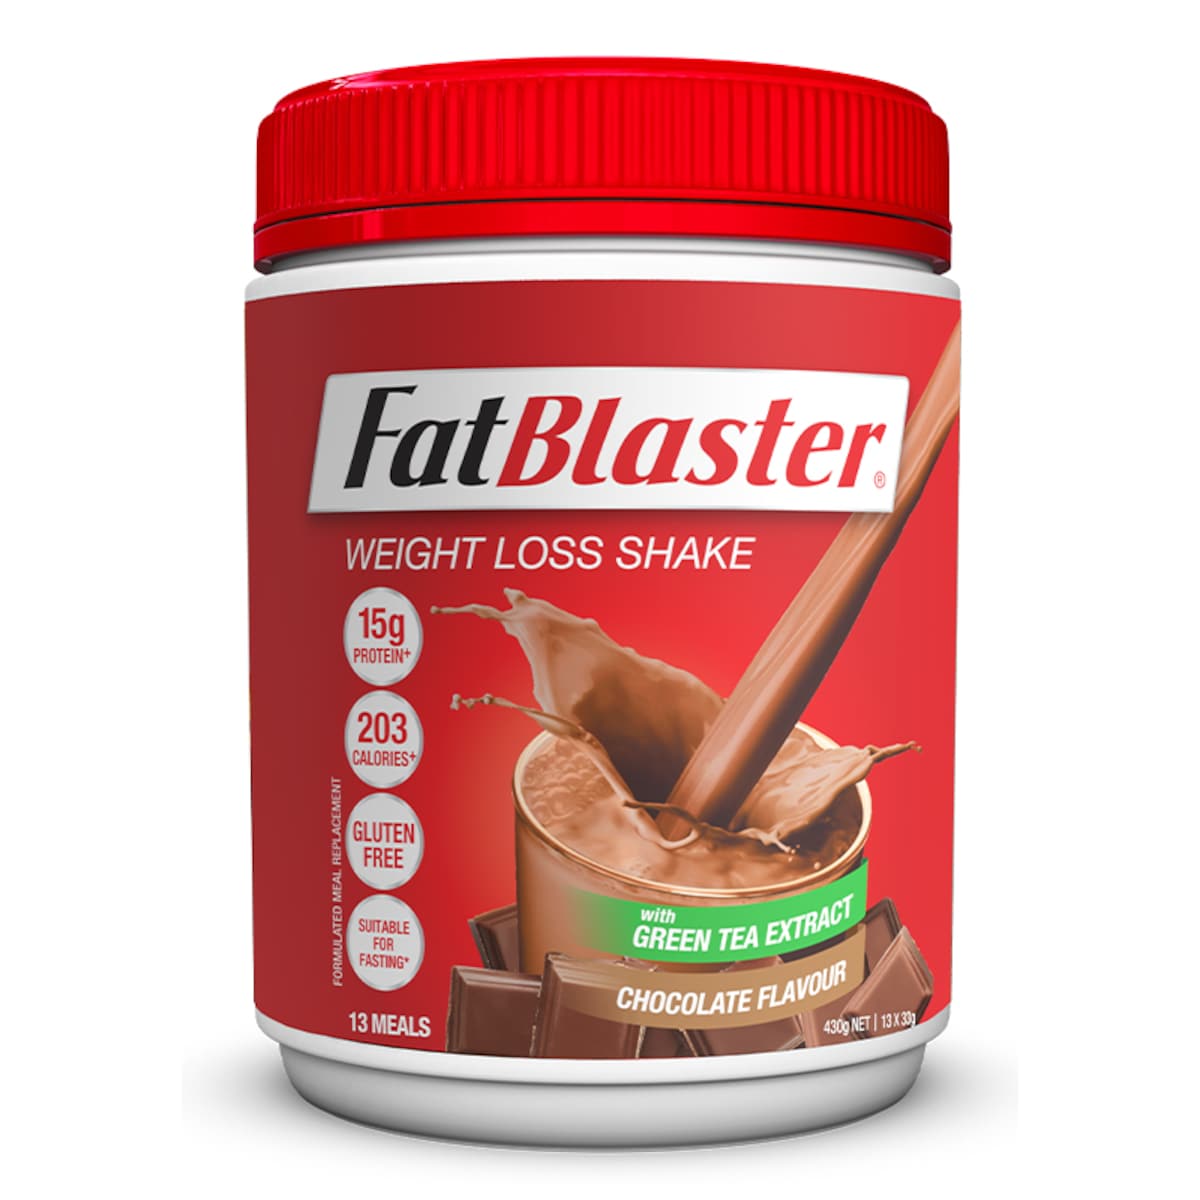 Naturopathica FatBlaster Weight Loss Shake Chocolate 430g